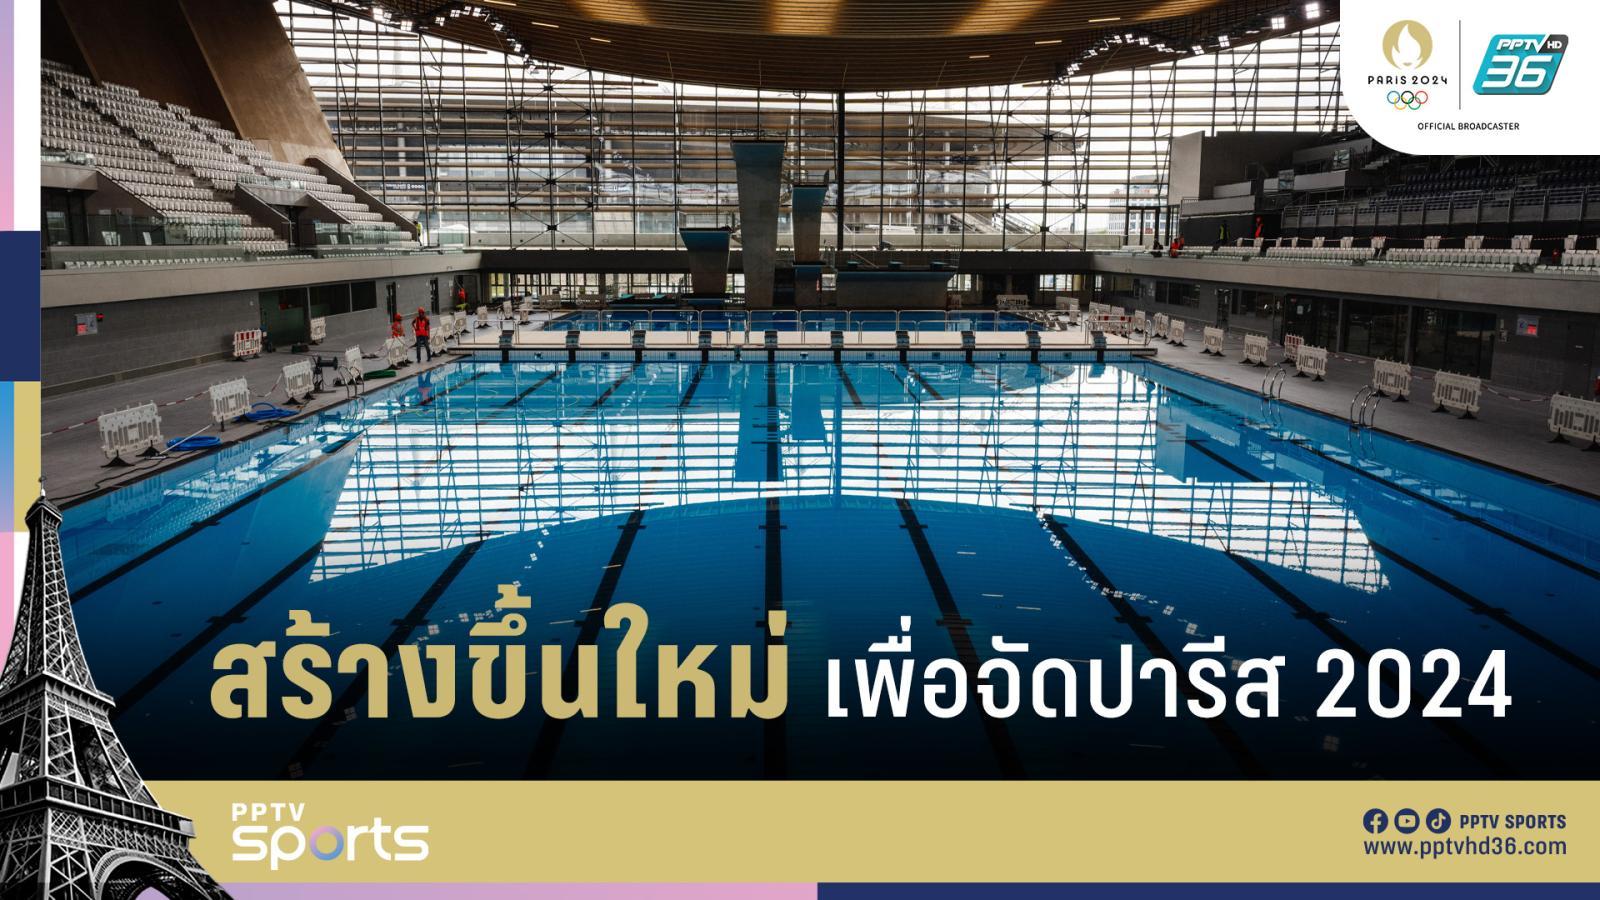 奥林匹克水上运动中心这是为2024年巴黎奥运会新建的唯一体育场：PPTVHD36